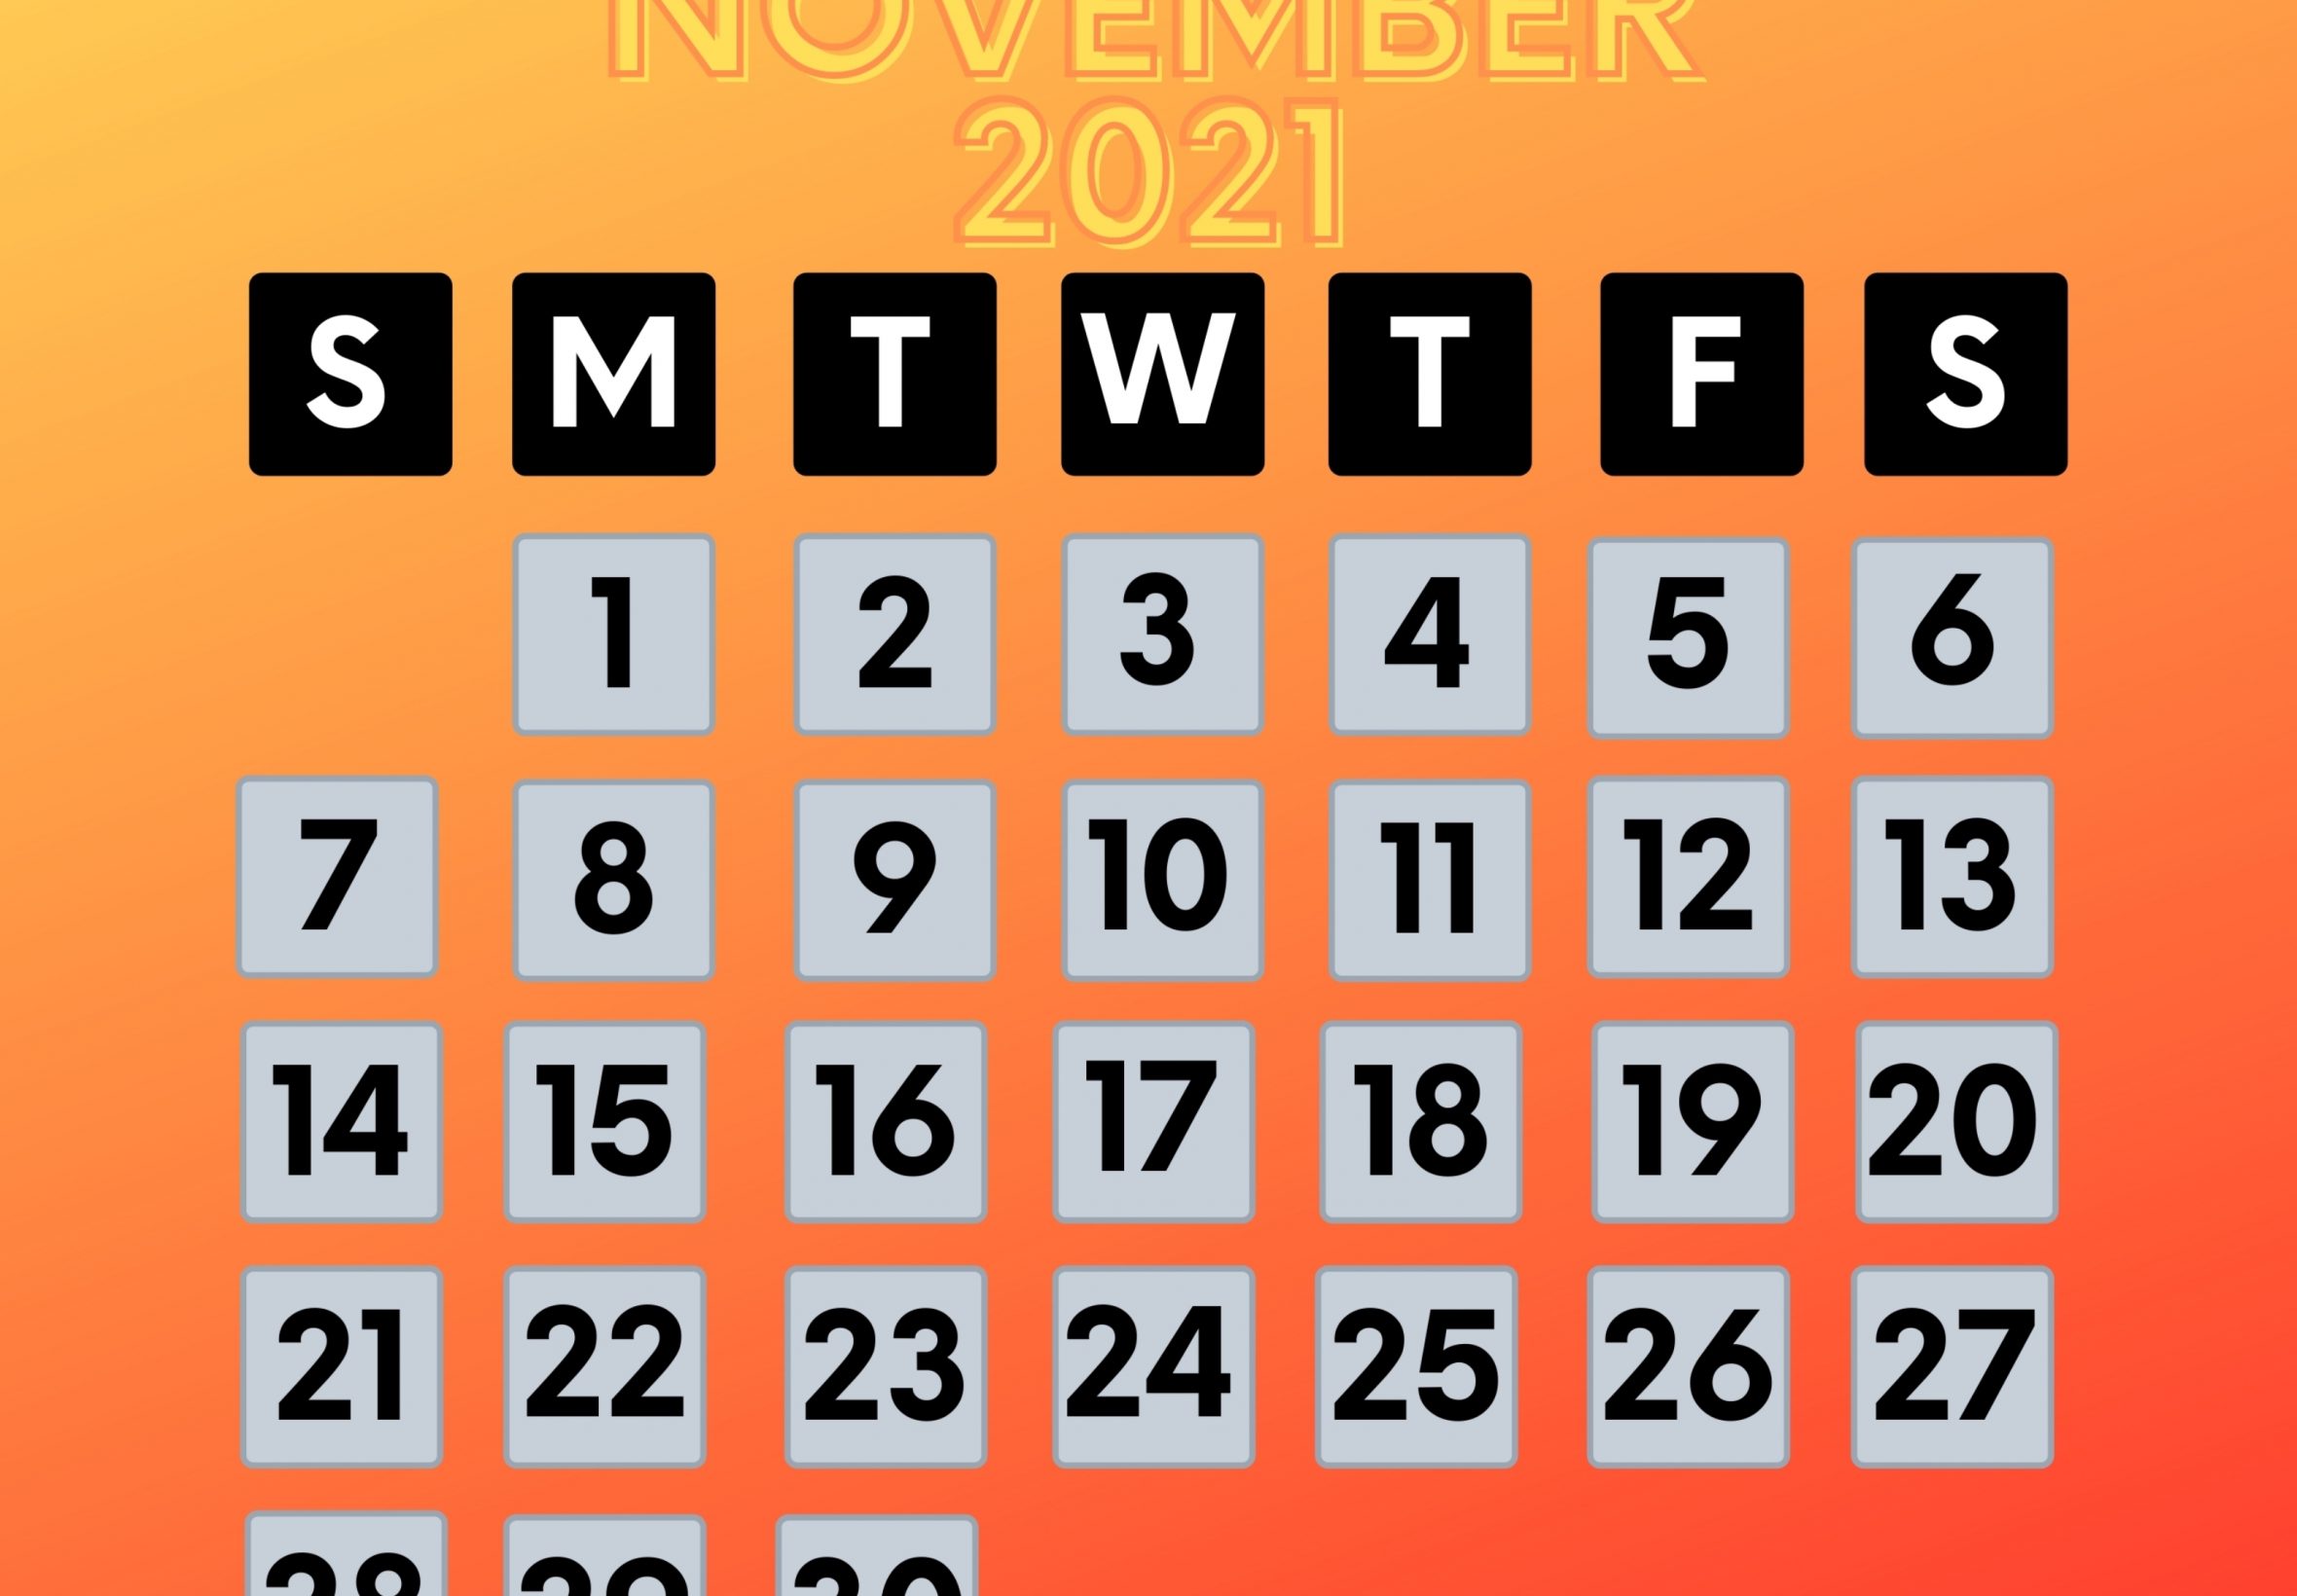 2360x1640 iPad Air wallpaper 4k November 2021 Calendar iPad Wallpaper 2360x1640 pixels resolution